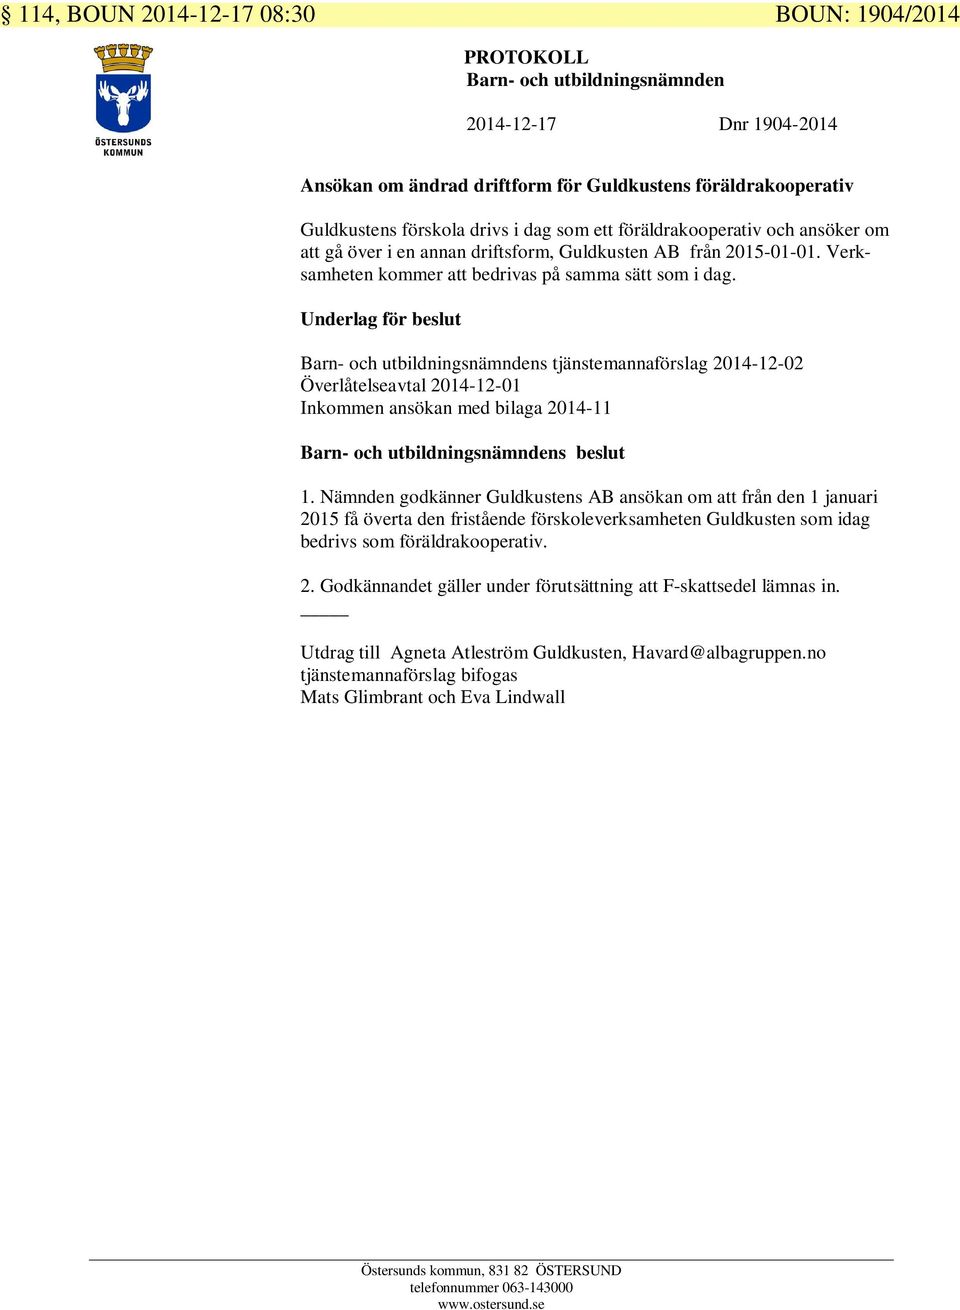 Barn- och utbildningsnämndens tjänstemannaförslag 2014-12-02 Överlåtelseavtal 2014-12-01 Inkommen ansökan med bilaga 2014-11 1.